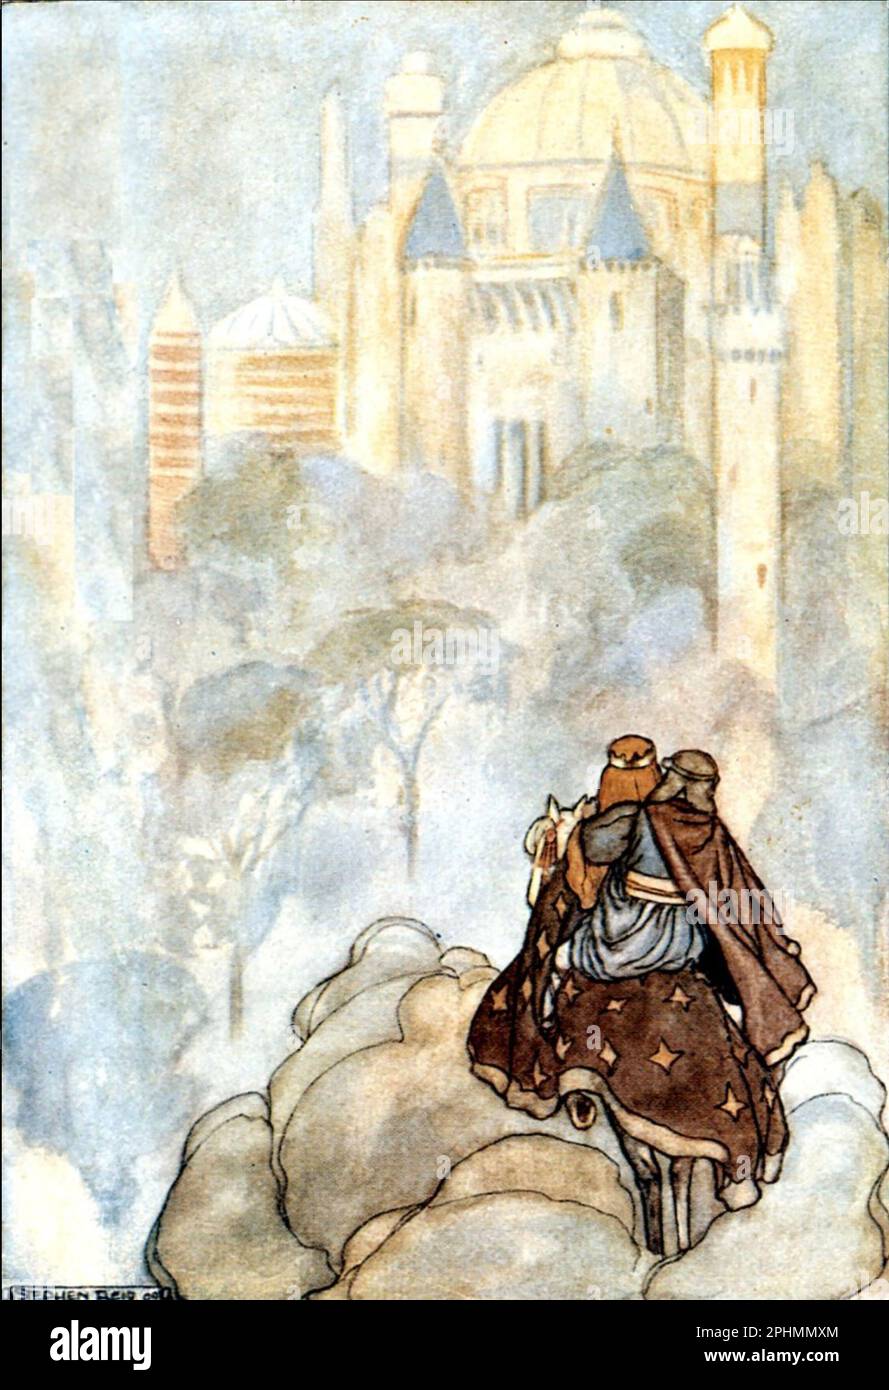 Tír na nÓg - Land der Jugend - ein keltischer Mythos in einer Illustration des schottischen Künstlers Stephen Reid aus einem Buch aus dem Jahr 1910, in dem Oisin und Niamh sich dem Land der Jugend nähern. Stockfoto